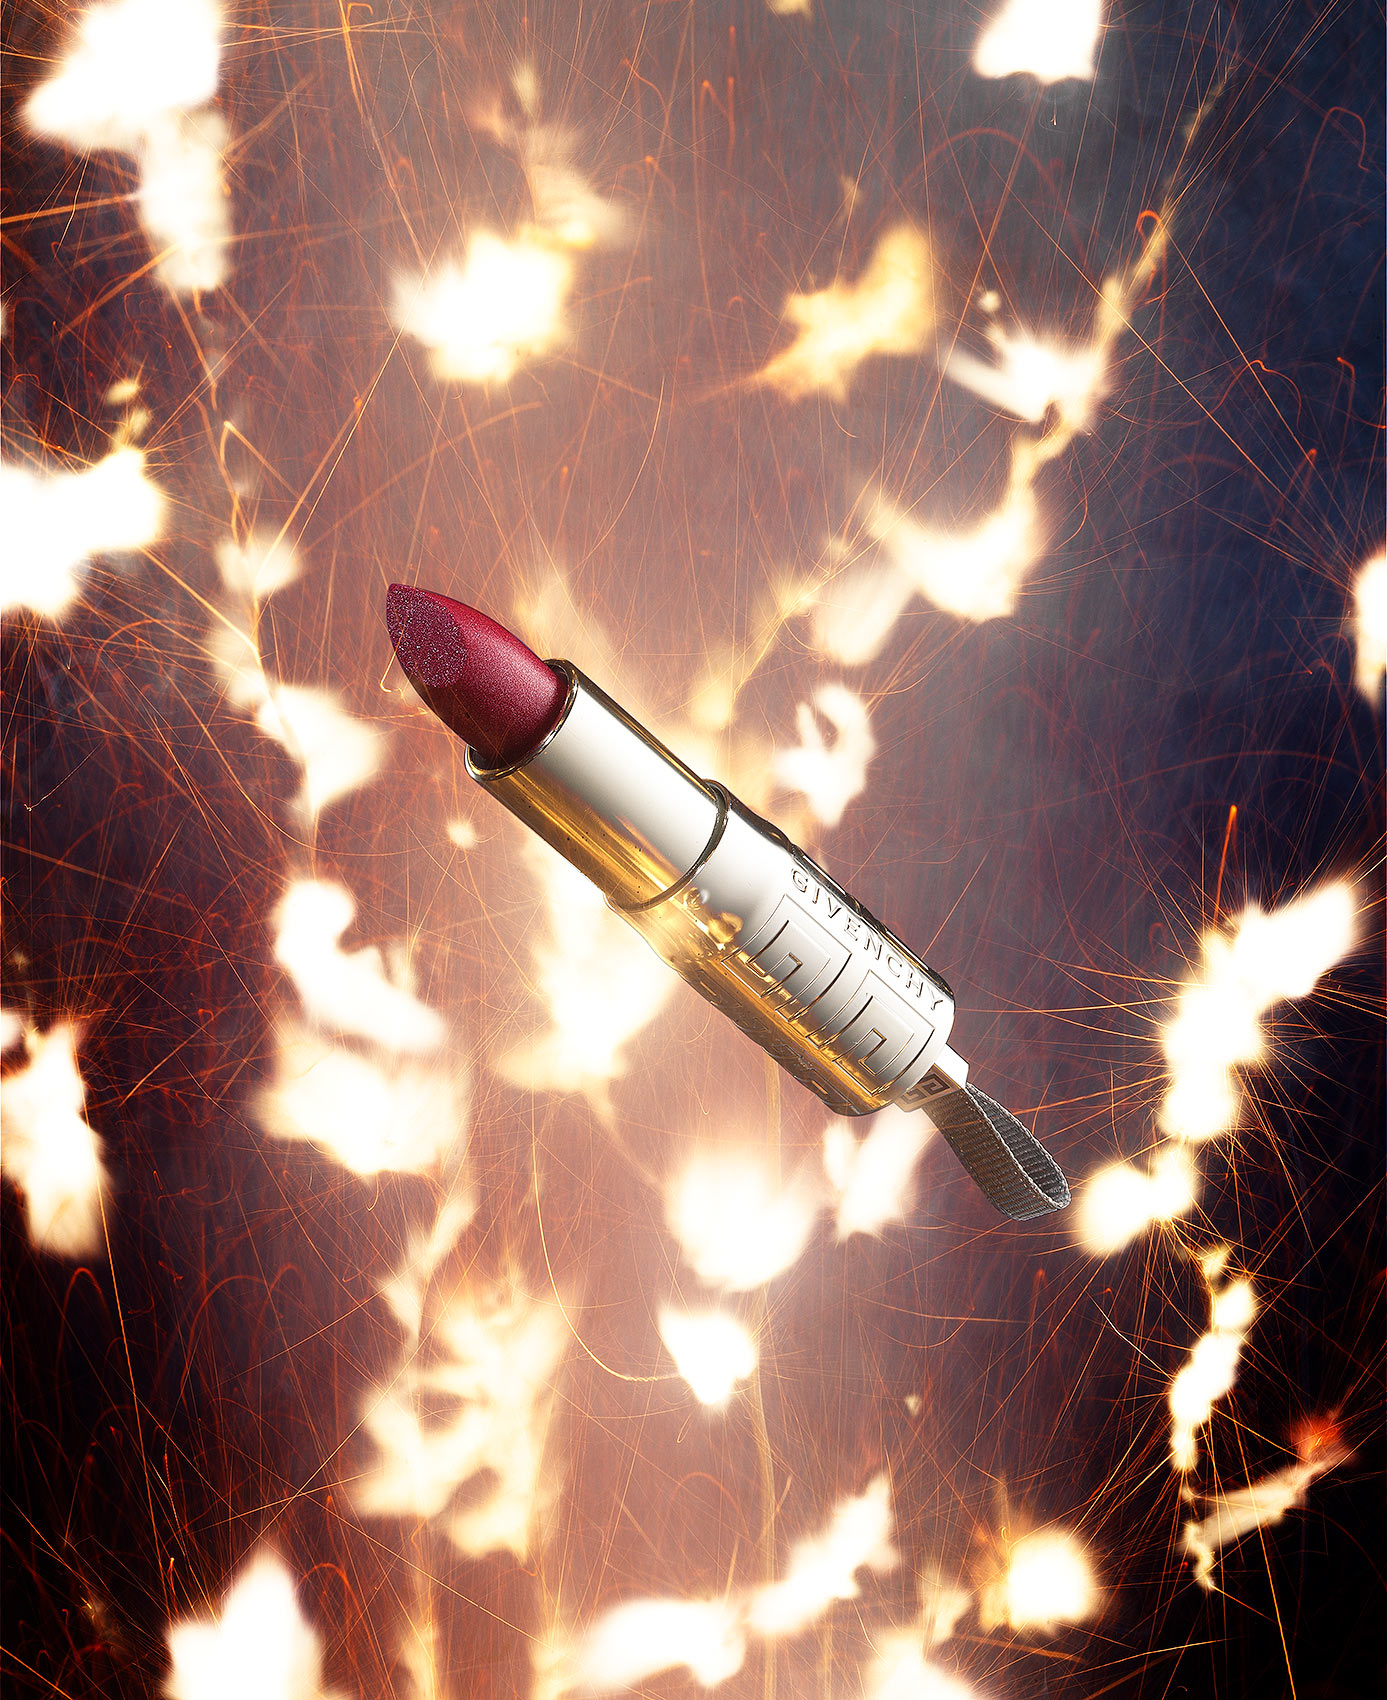 Firecracker Lipstick